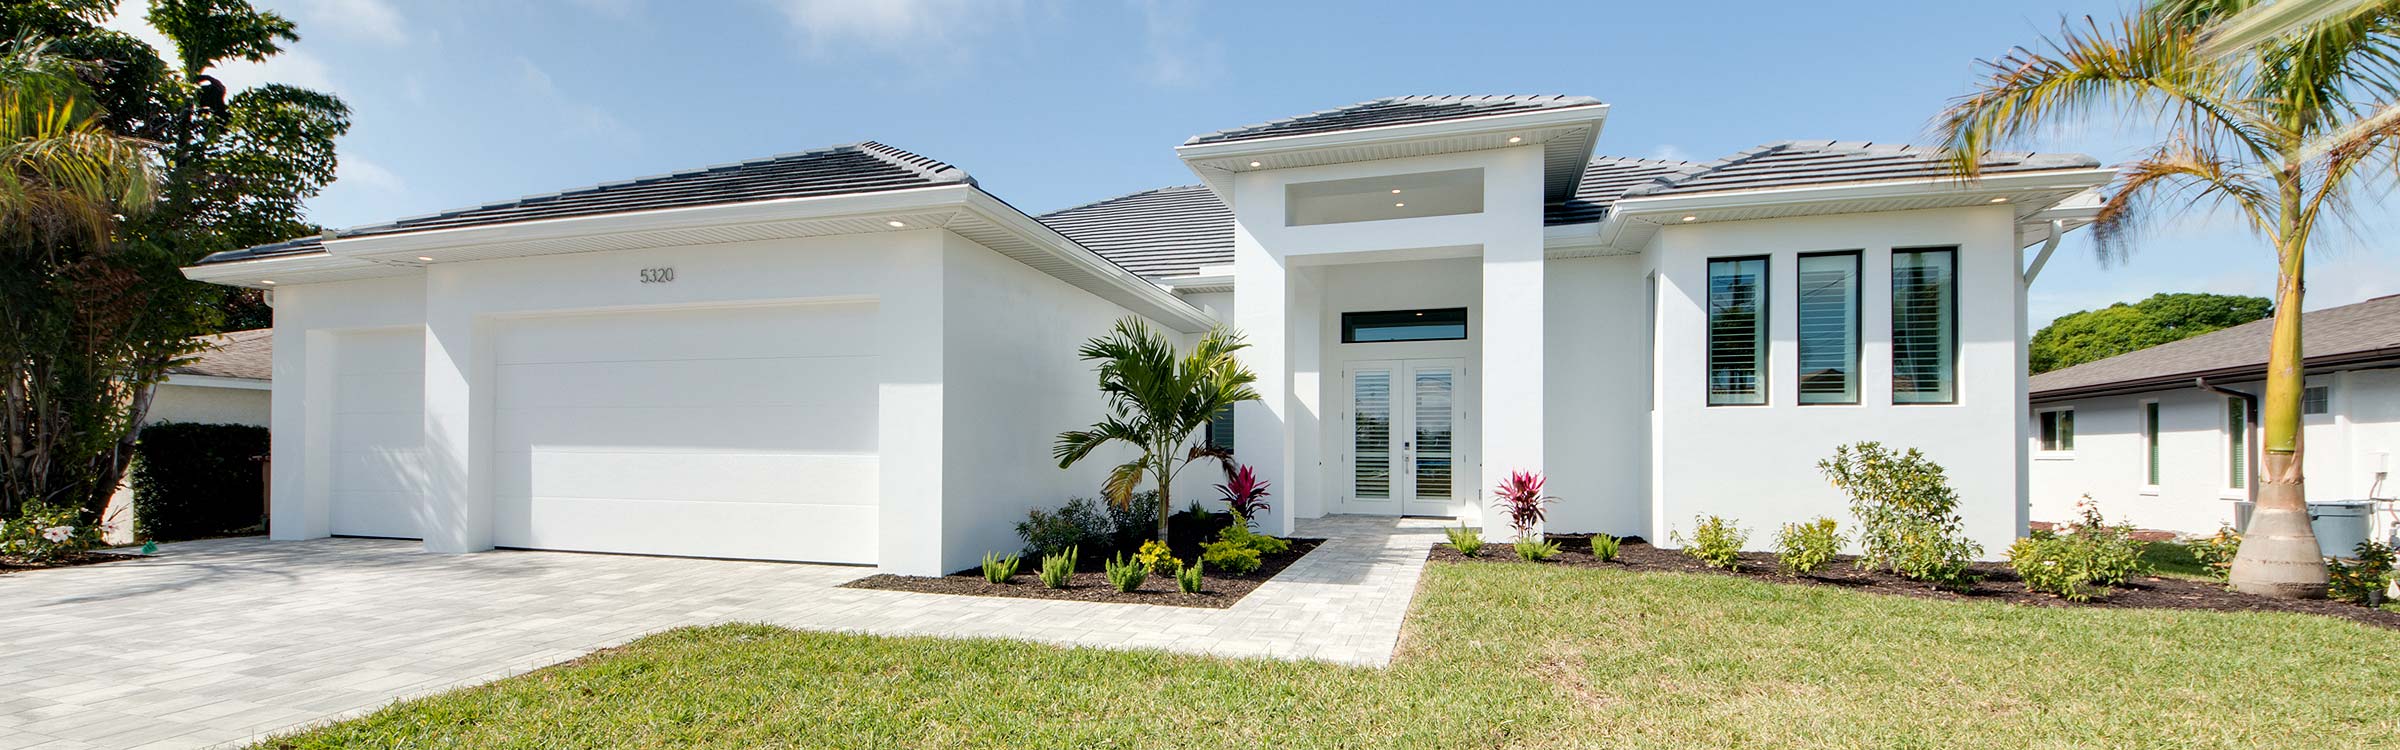 Maklersystem in Florida - deutschsprachiger Immobilienmakler in Florida